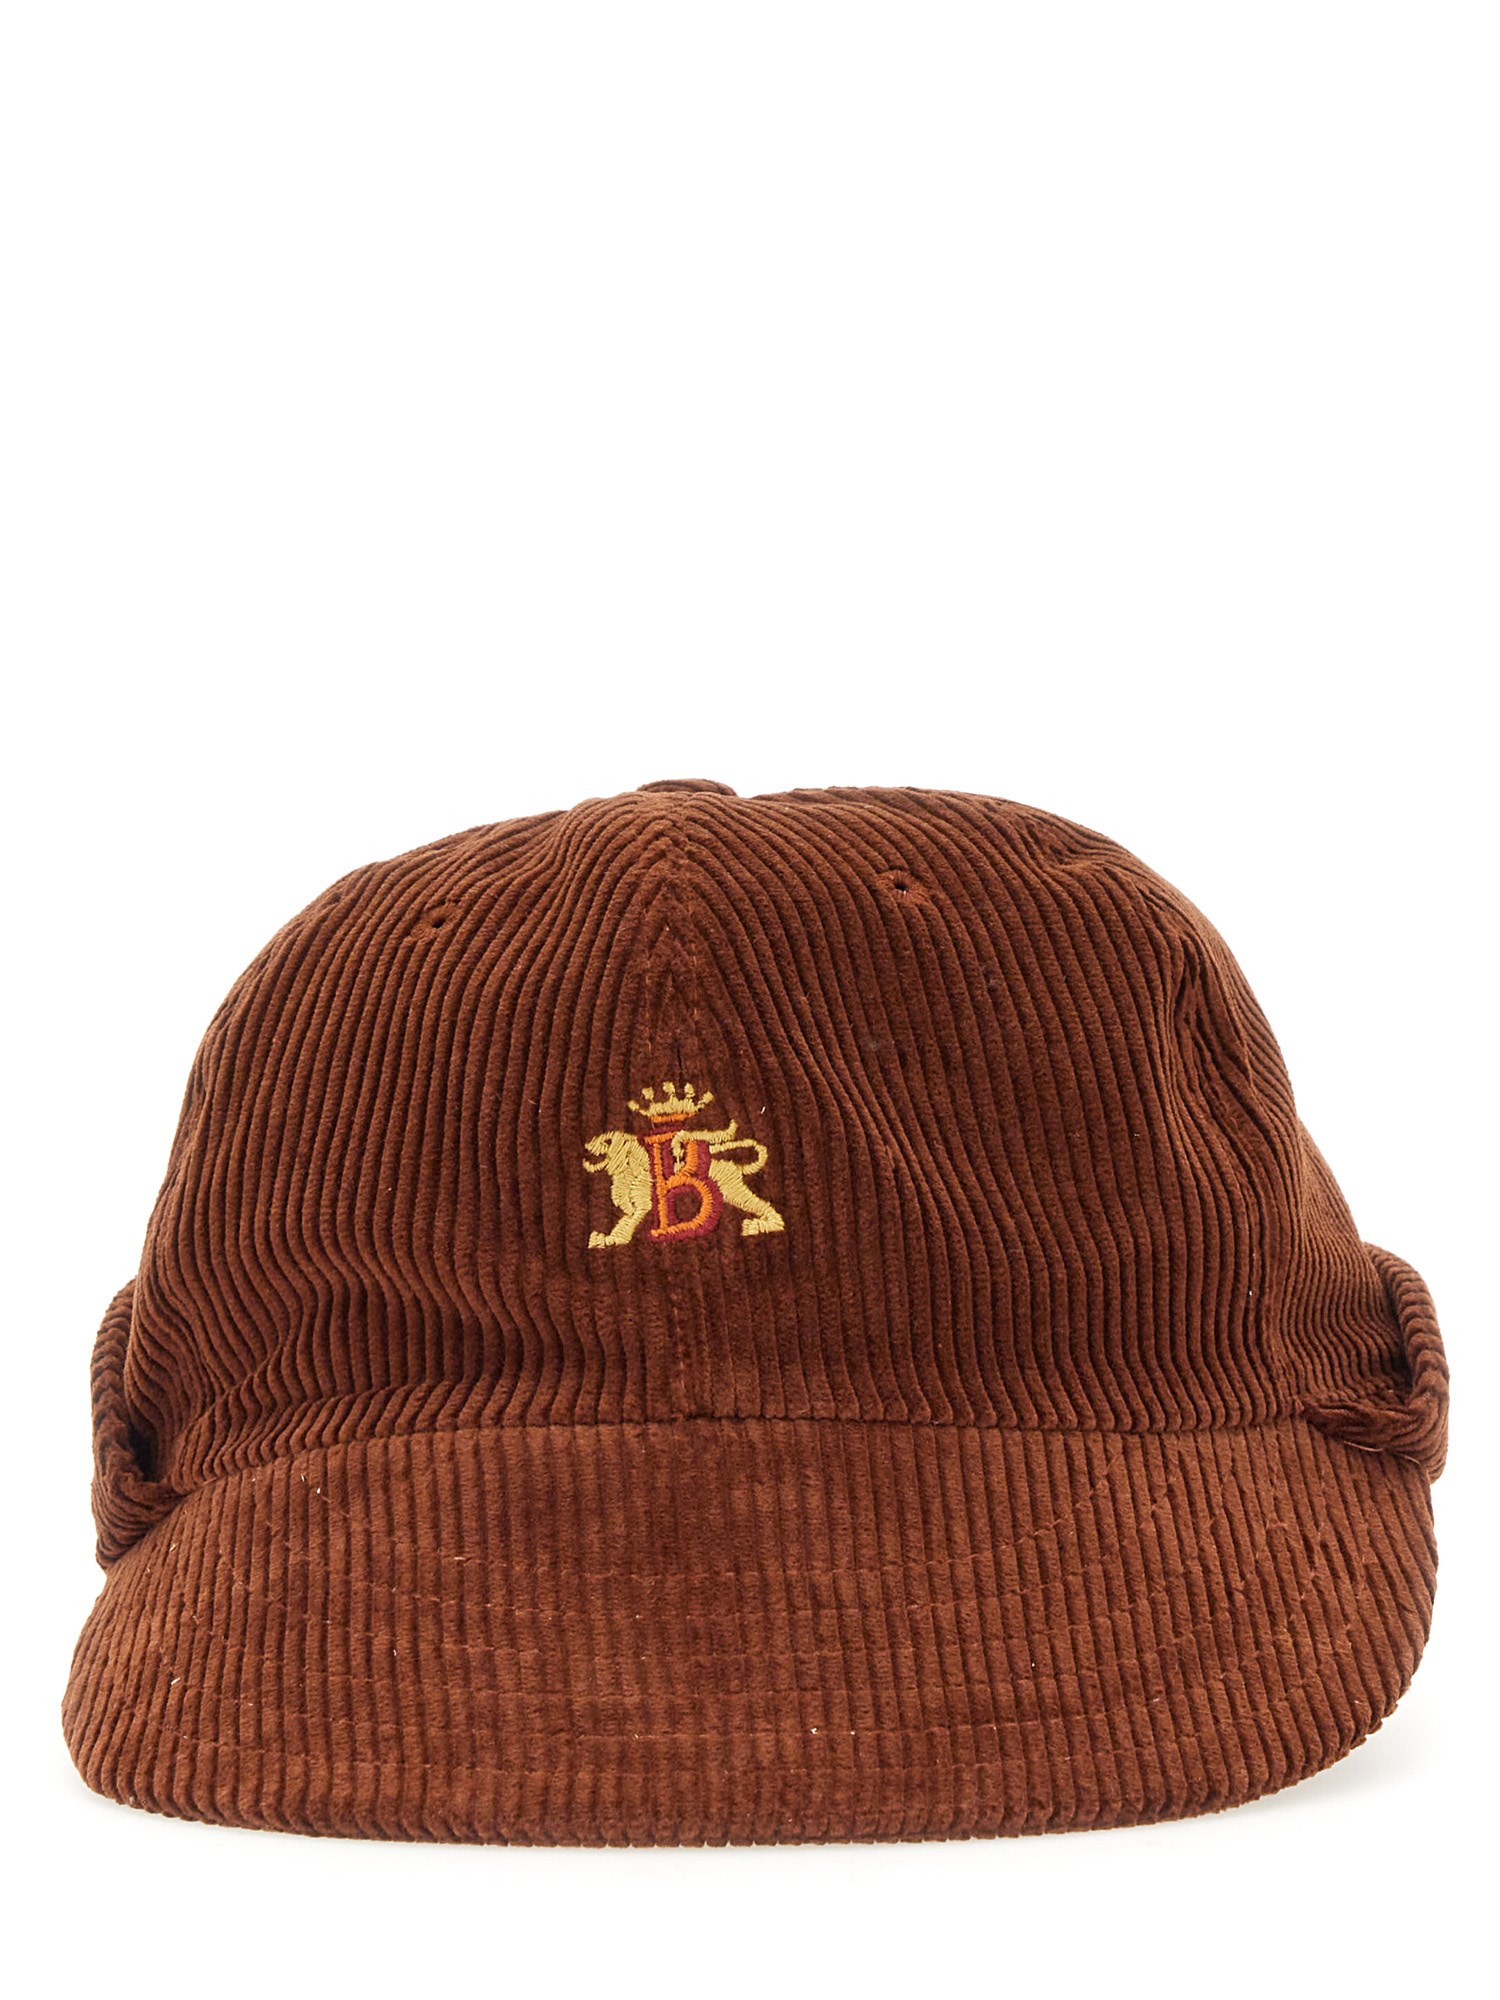 baracuta hat with logo